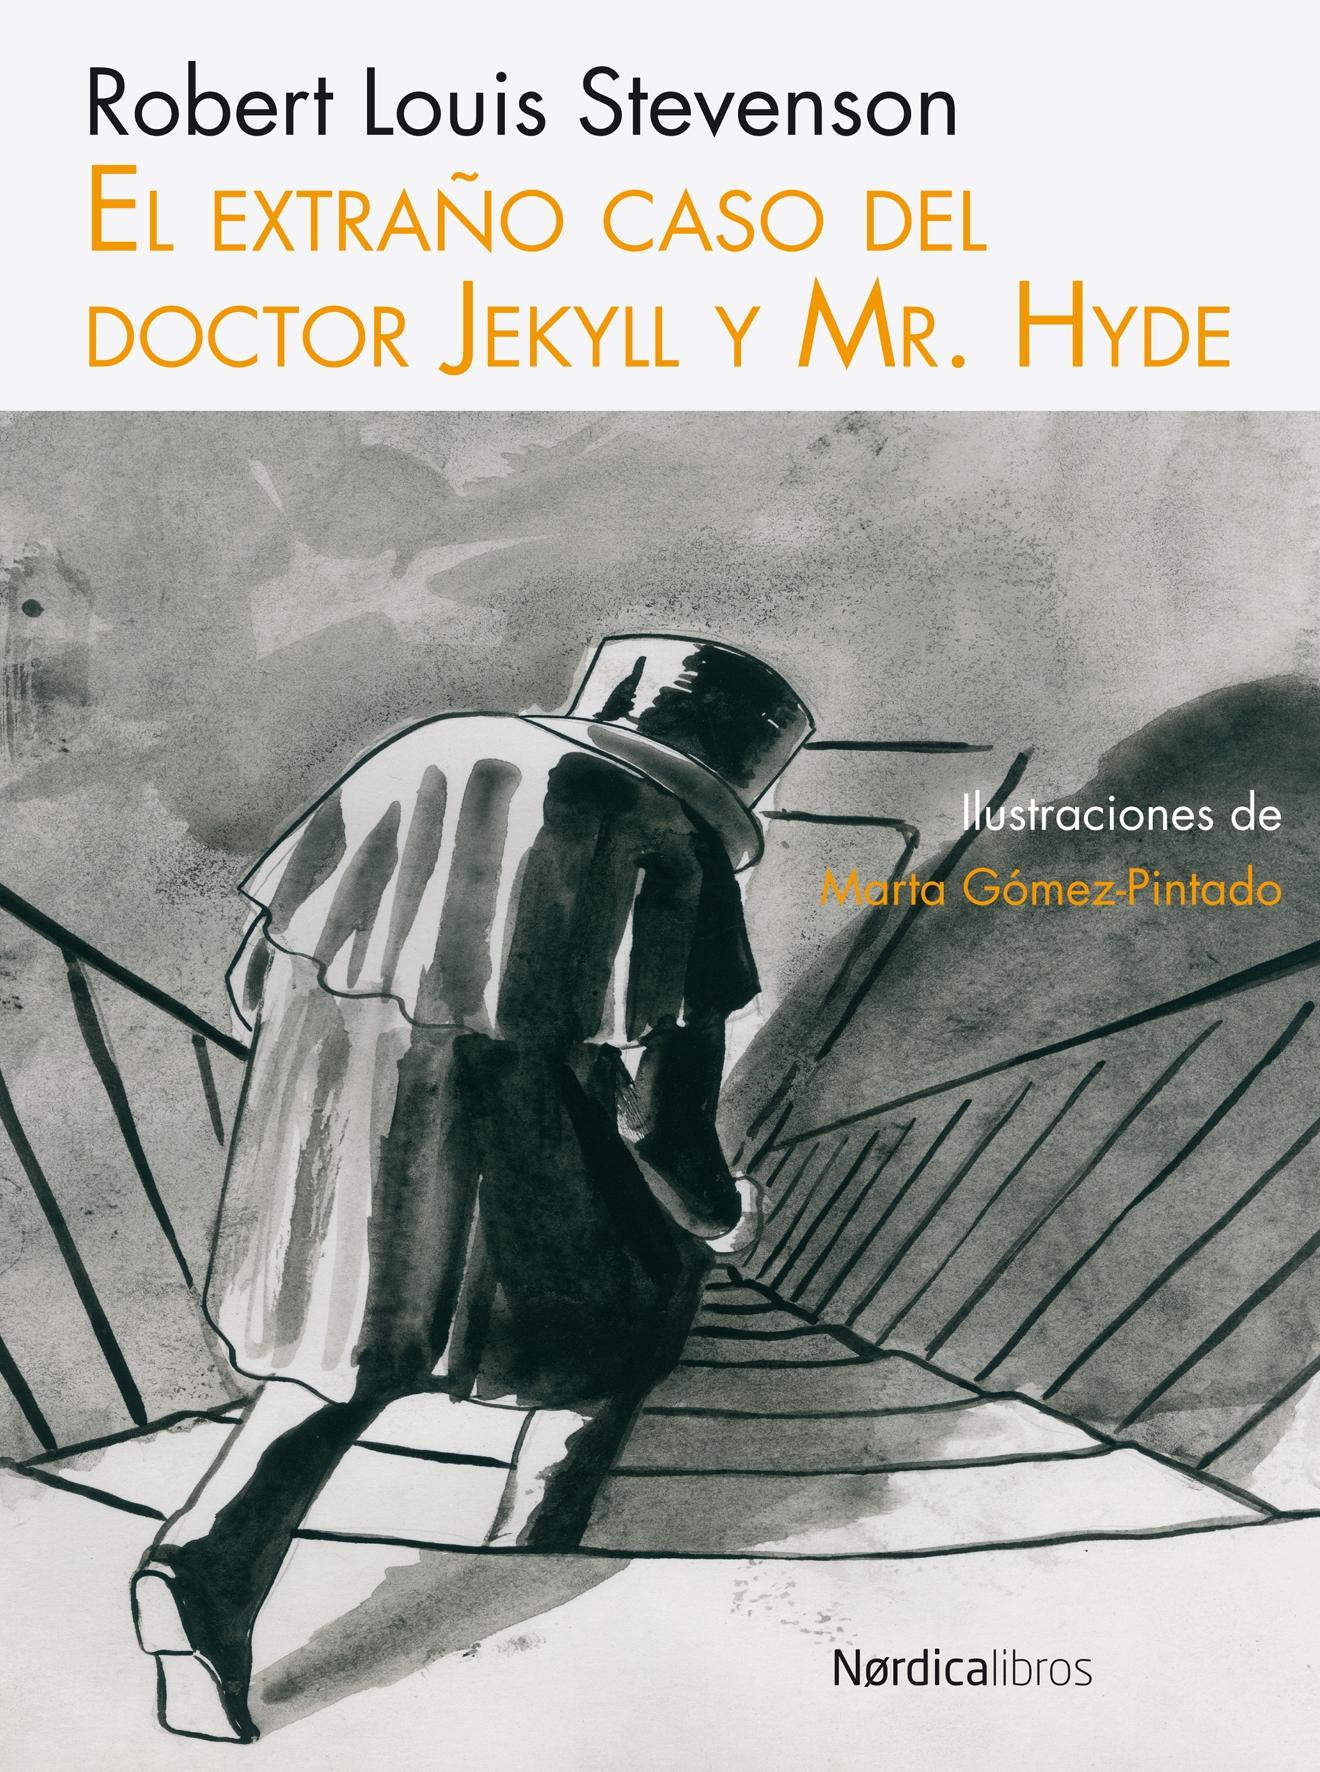 Extraño Caso del Doctor Jekyll y Mr Hyde "Ilus. Gomez Pintado"